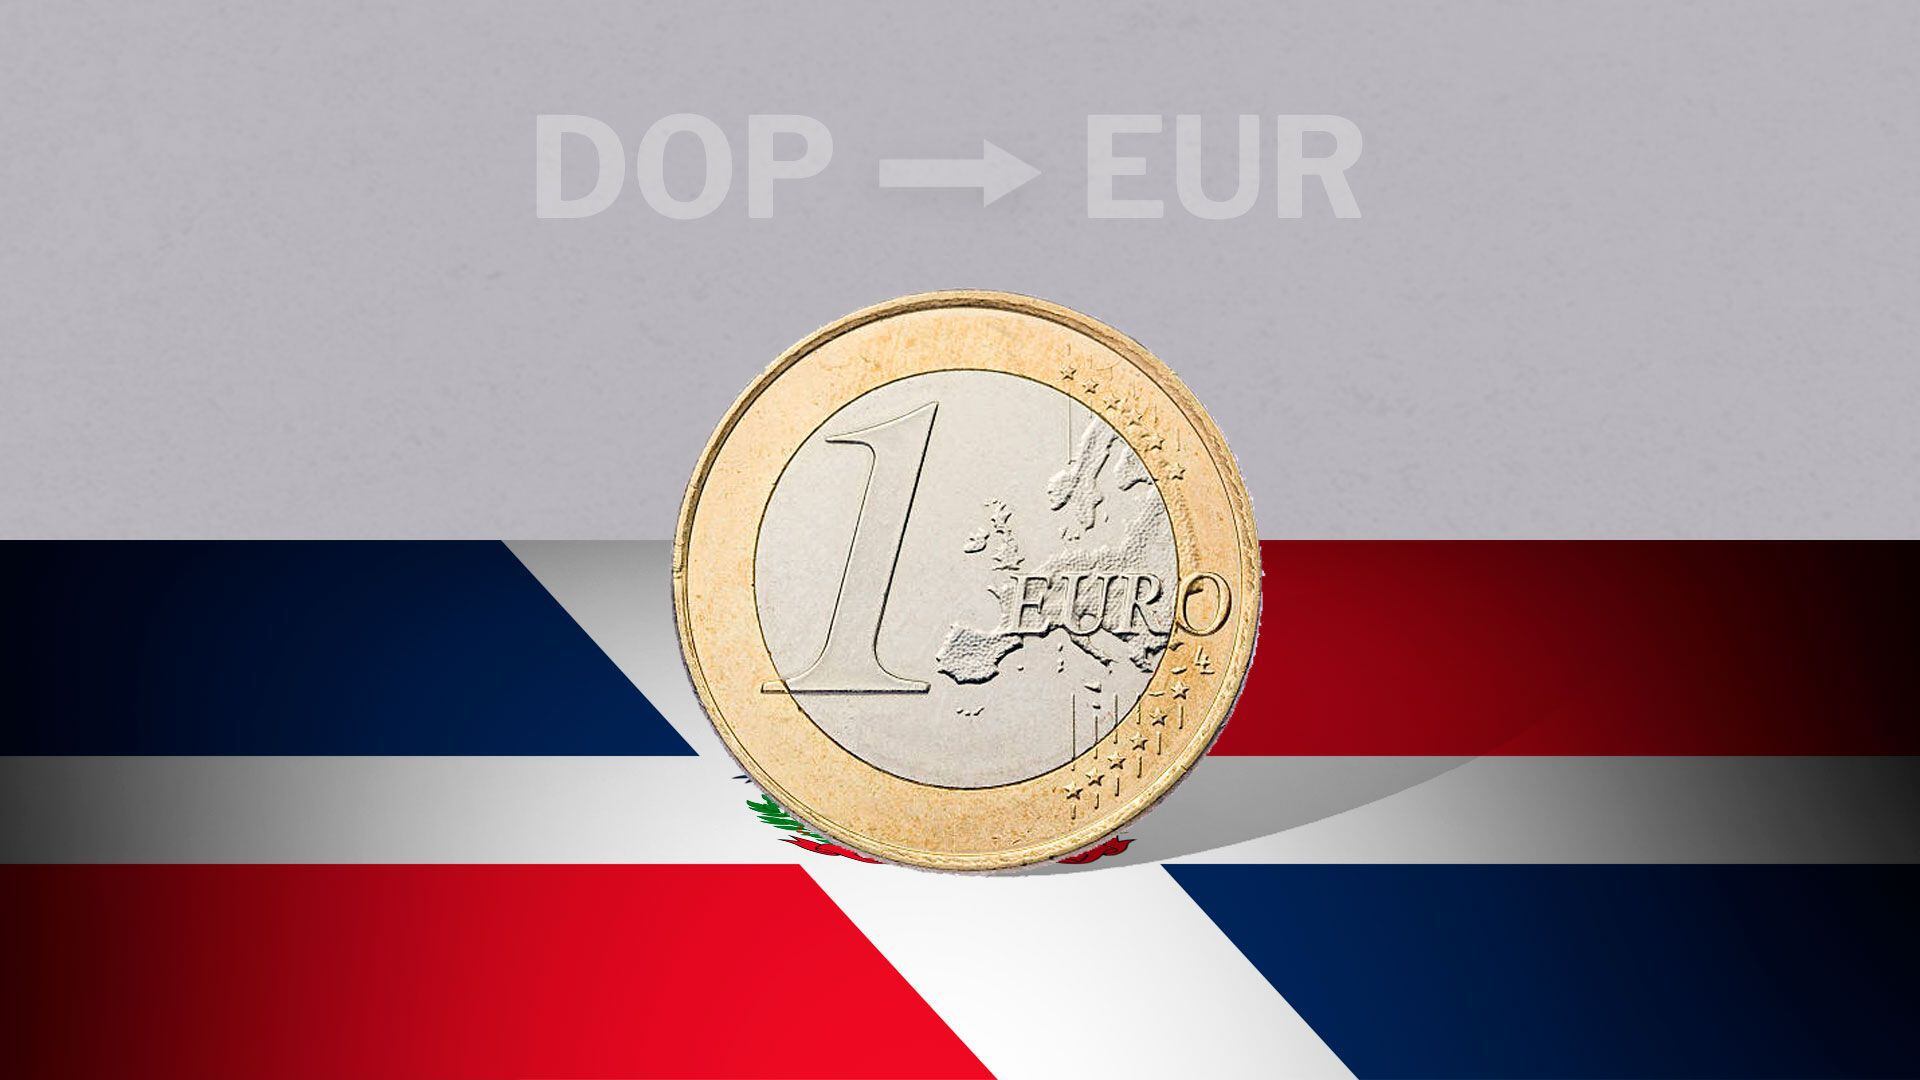 Junto con el dólar, el euro es una de las divisas con mayor movimiento en el mercado cambiario. (Infobae)